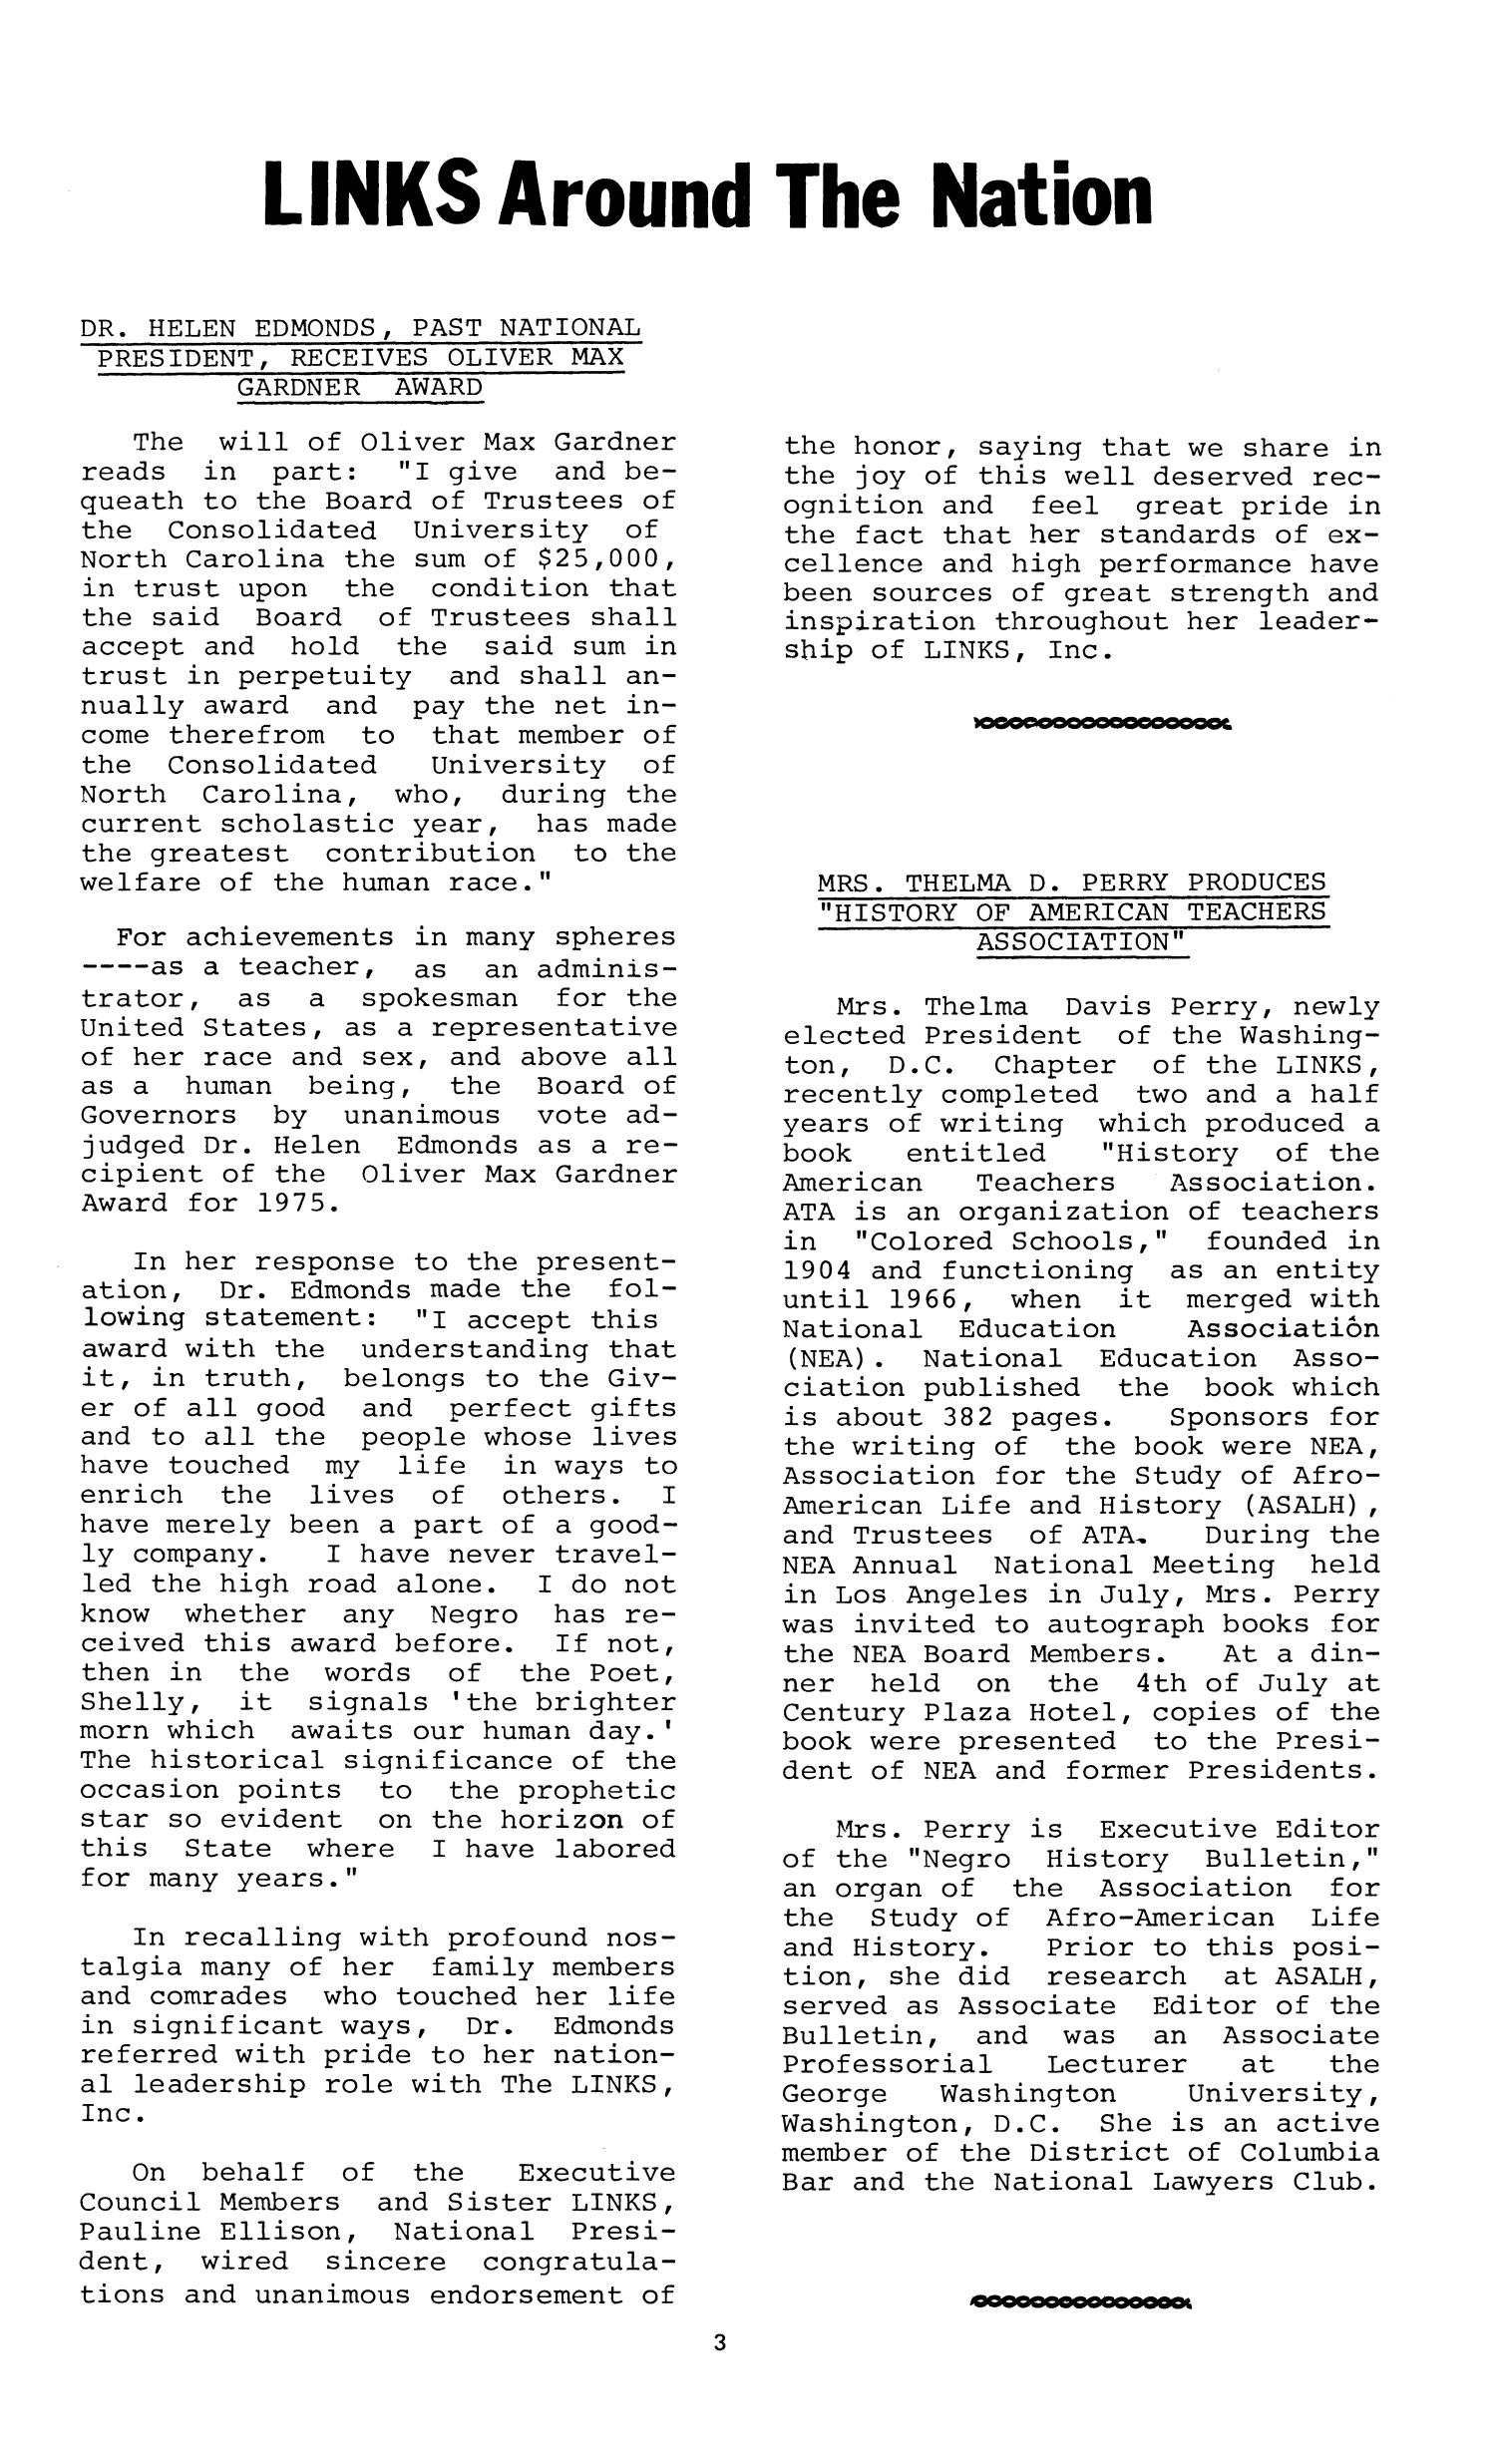 Links National Newsletter, Volume 1, Number 1, October 1975
                                                
                                                    3
                                                